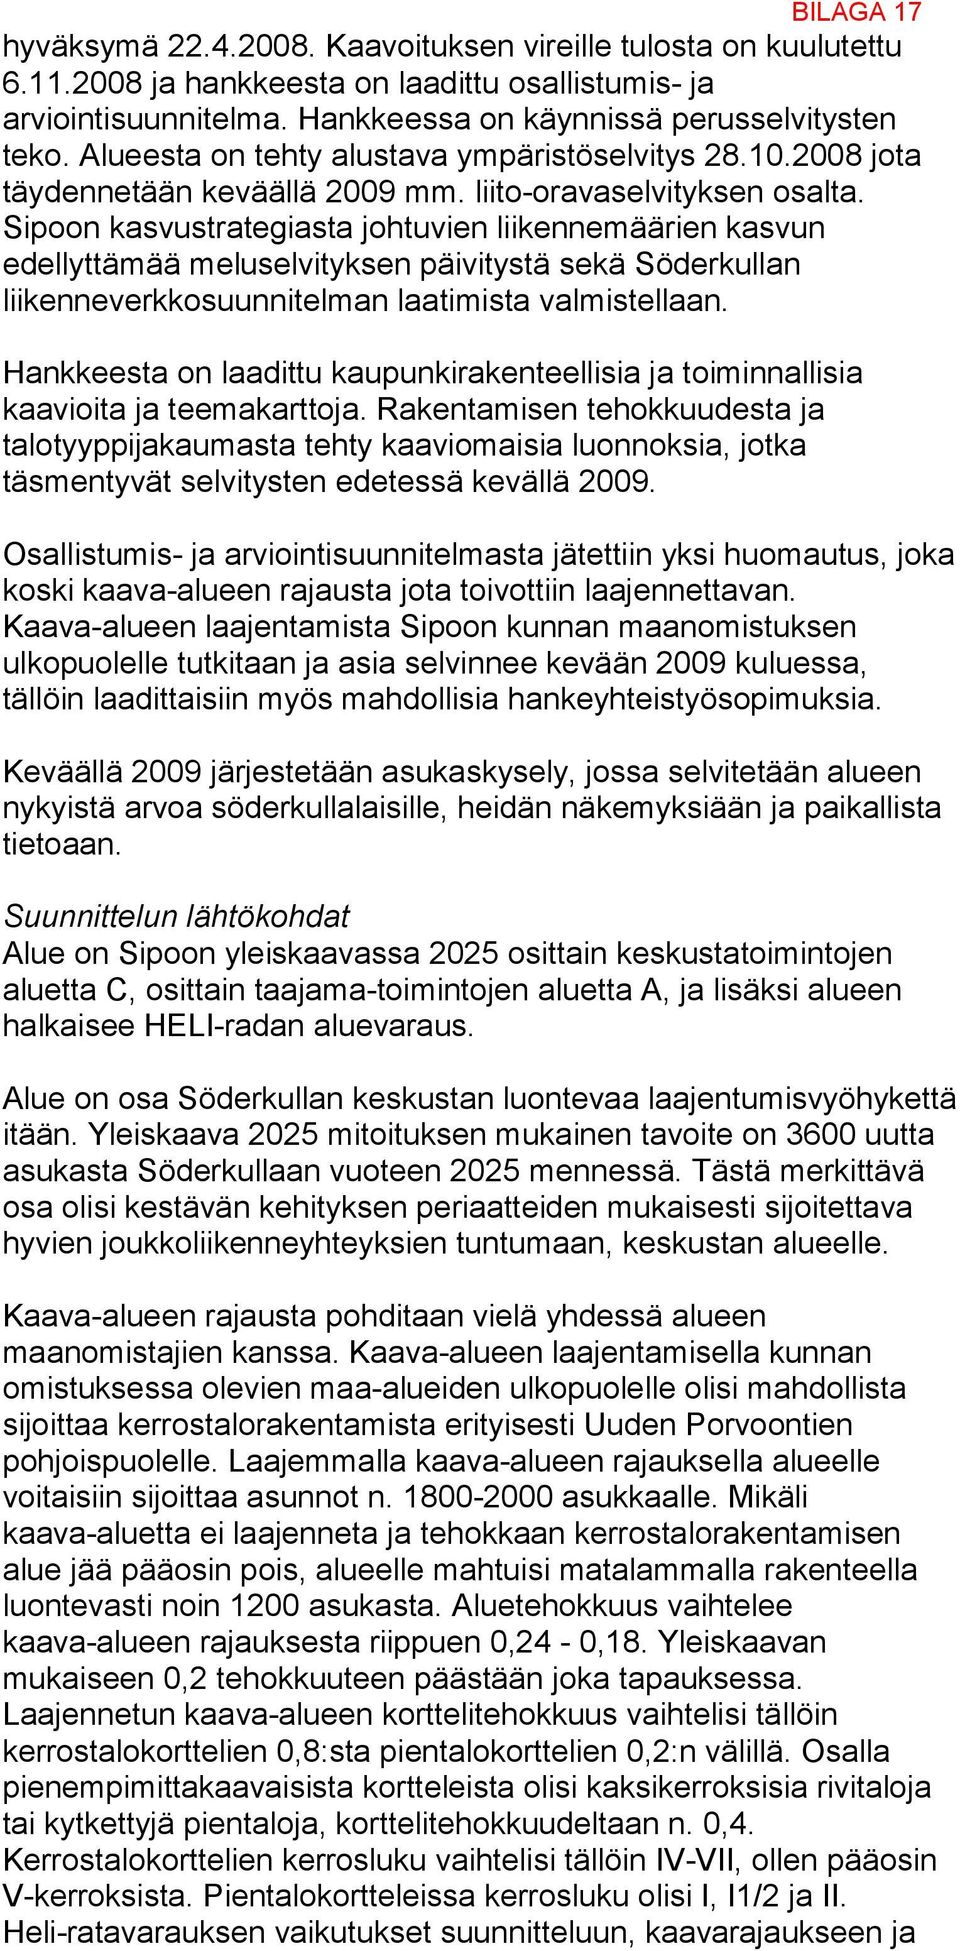 Sipoon kasvustrategiasta johtuvien liikennemäärien kasvun edellyttämää meluselvityksen päivitystä sekä Söderkullan liikenneverkkosuunnitelman laatimista valmistellaan.